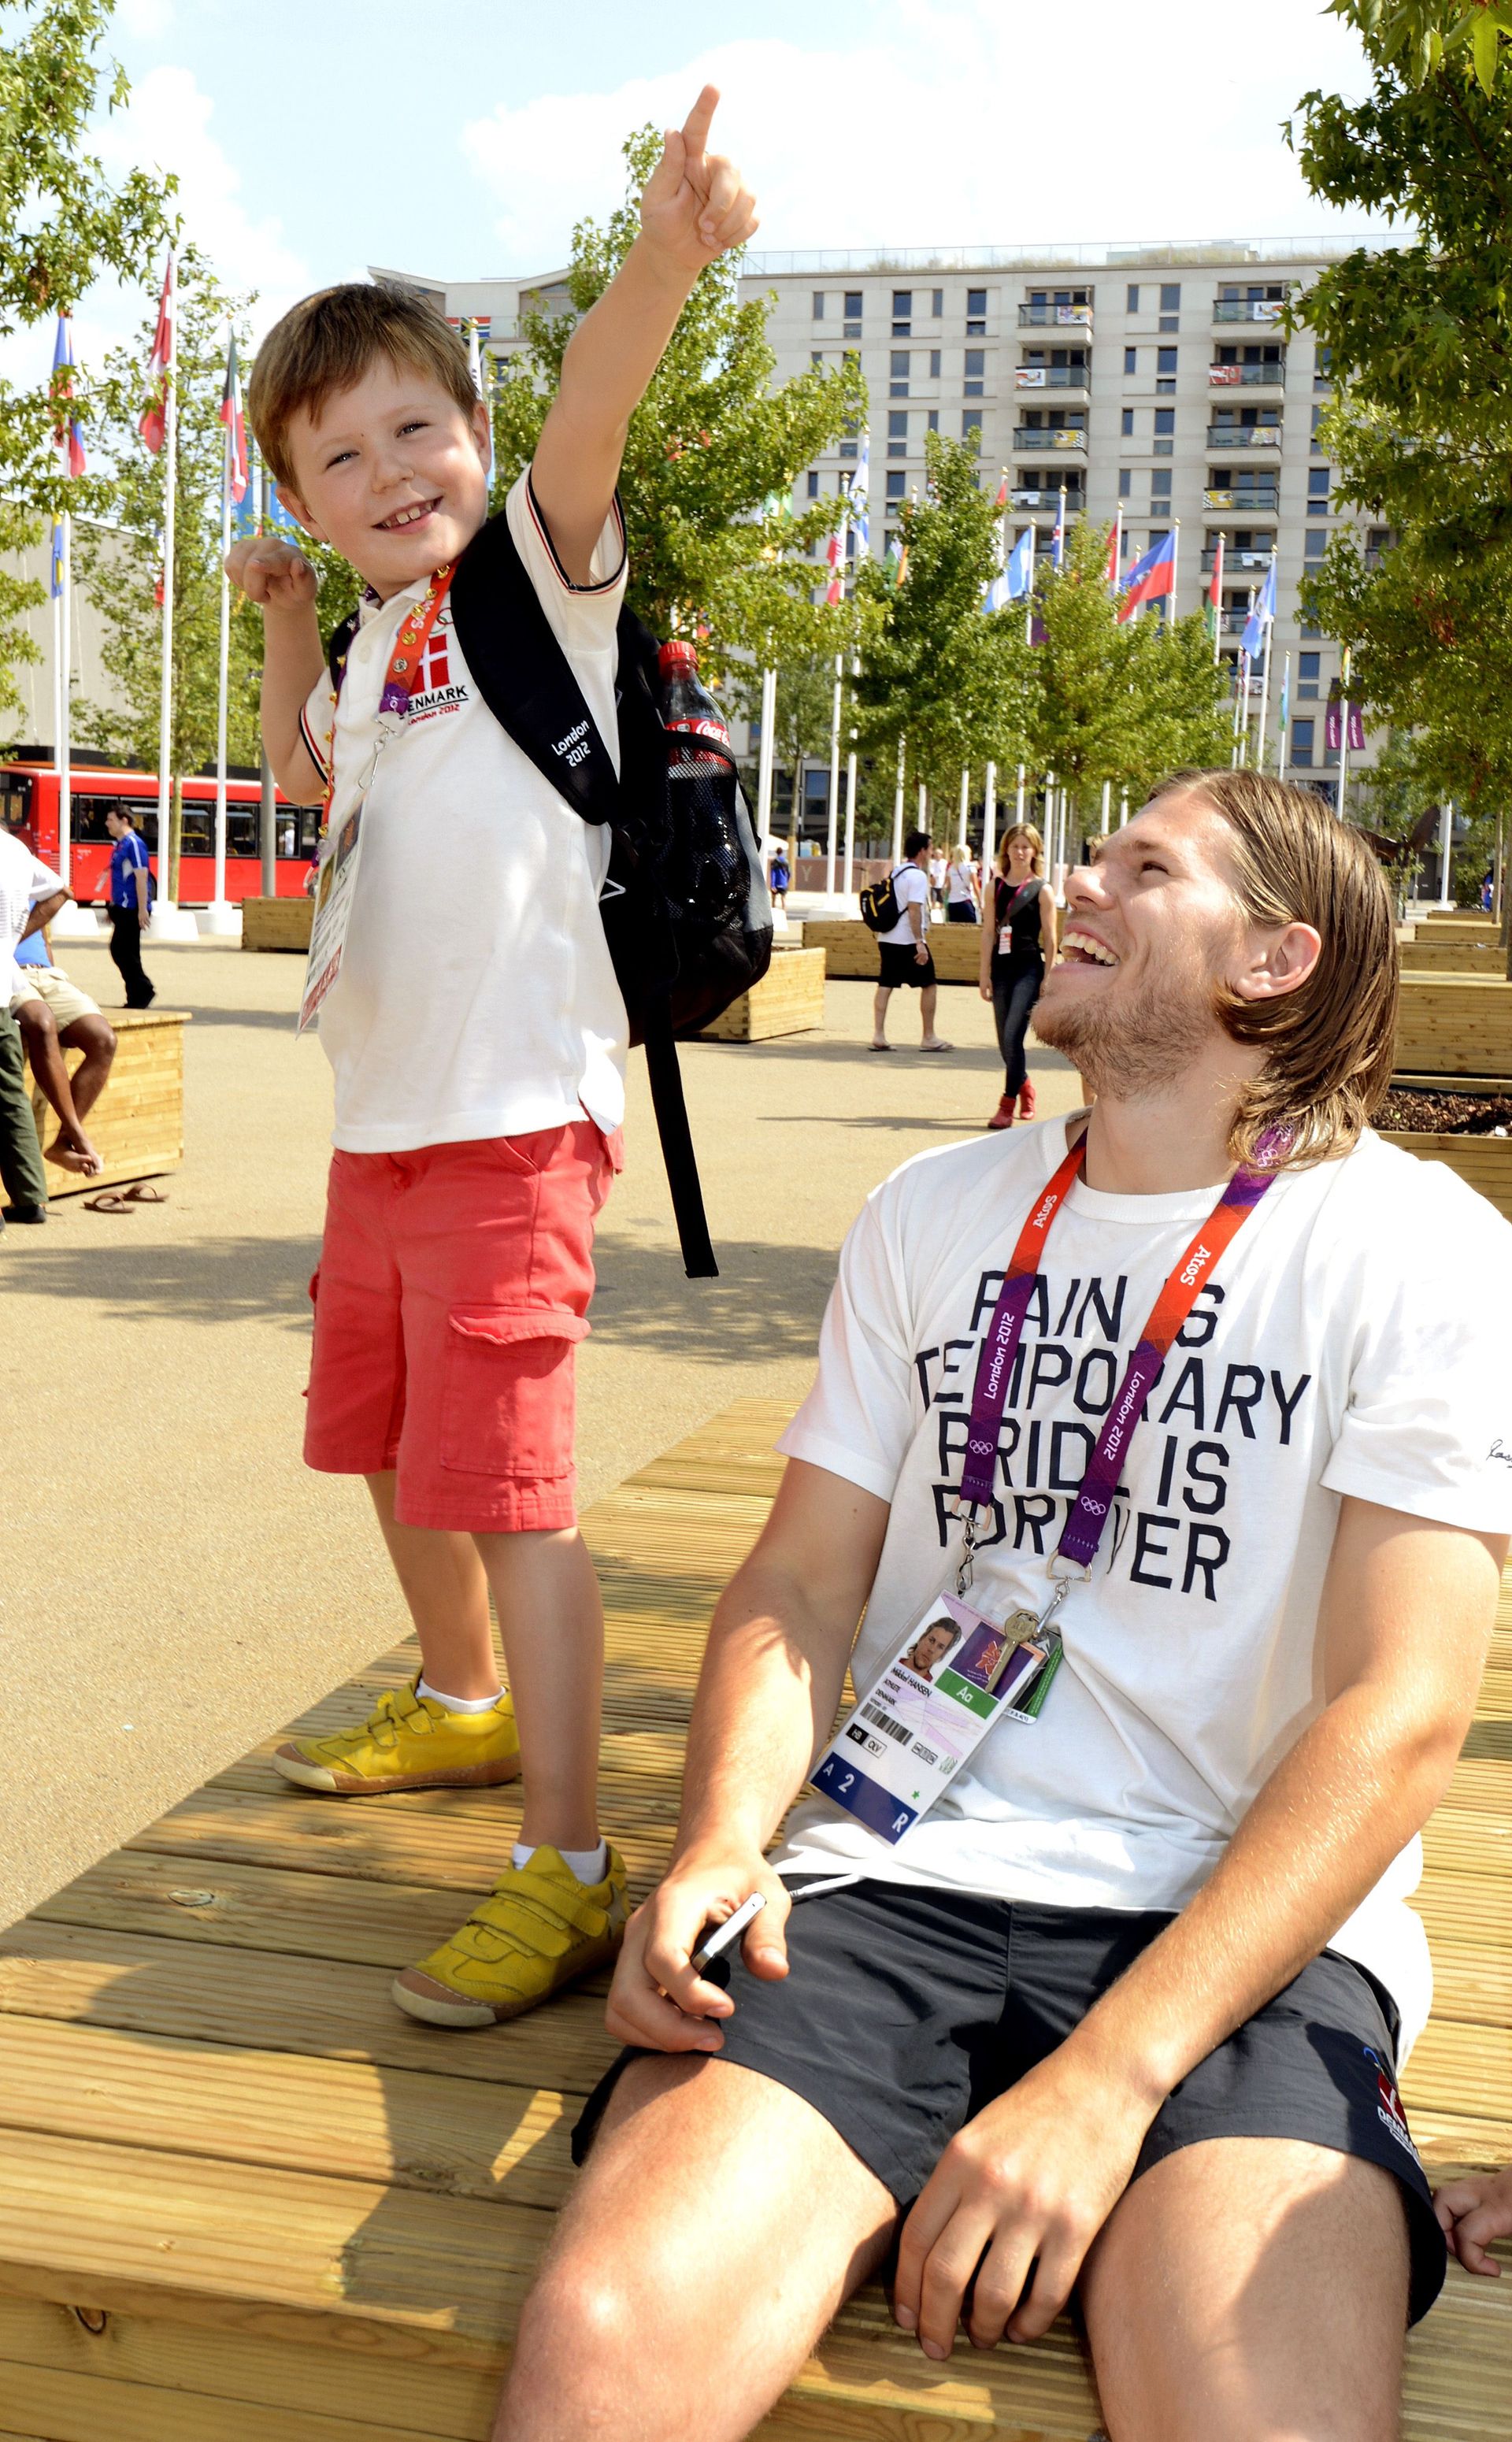 In augustus 2012 tijdens een bezoek aan de Olympische Spelen van Londen. Deense atleet Mikkel Hansen